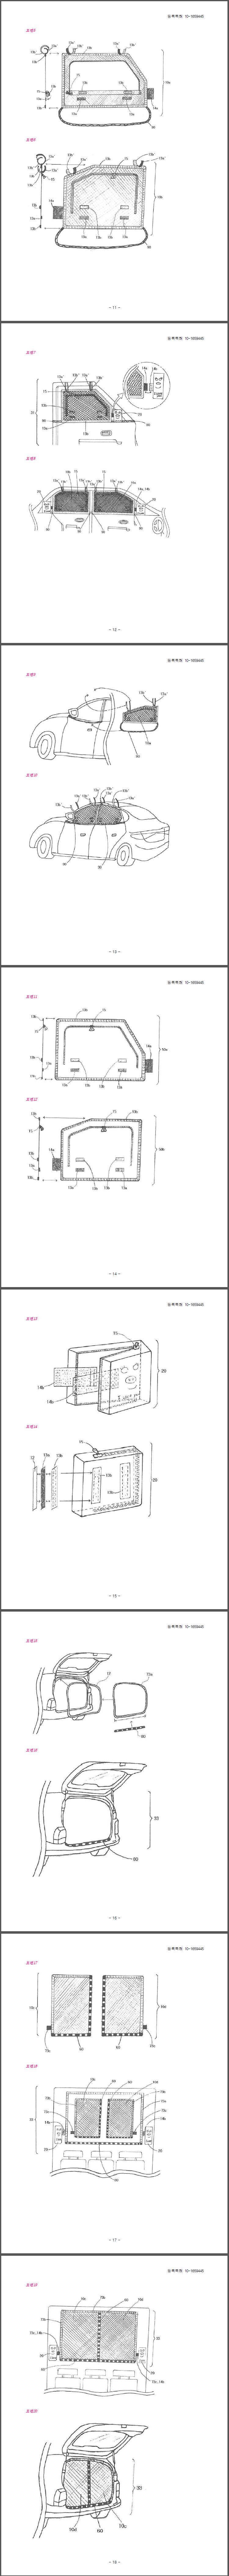 특허 제10-1659445호(차량용 방충망 세트, 정진우, 